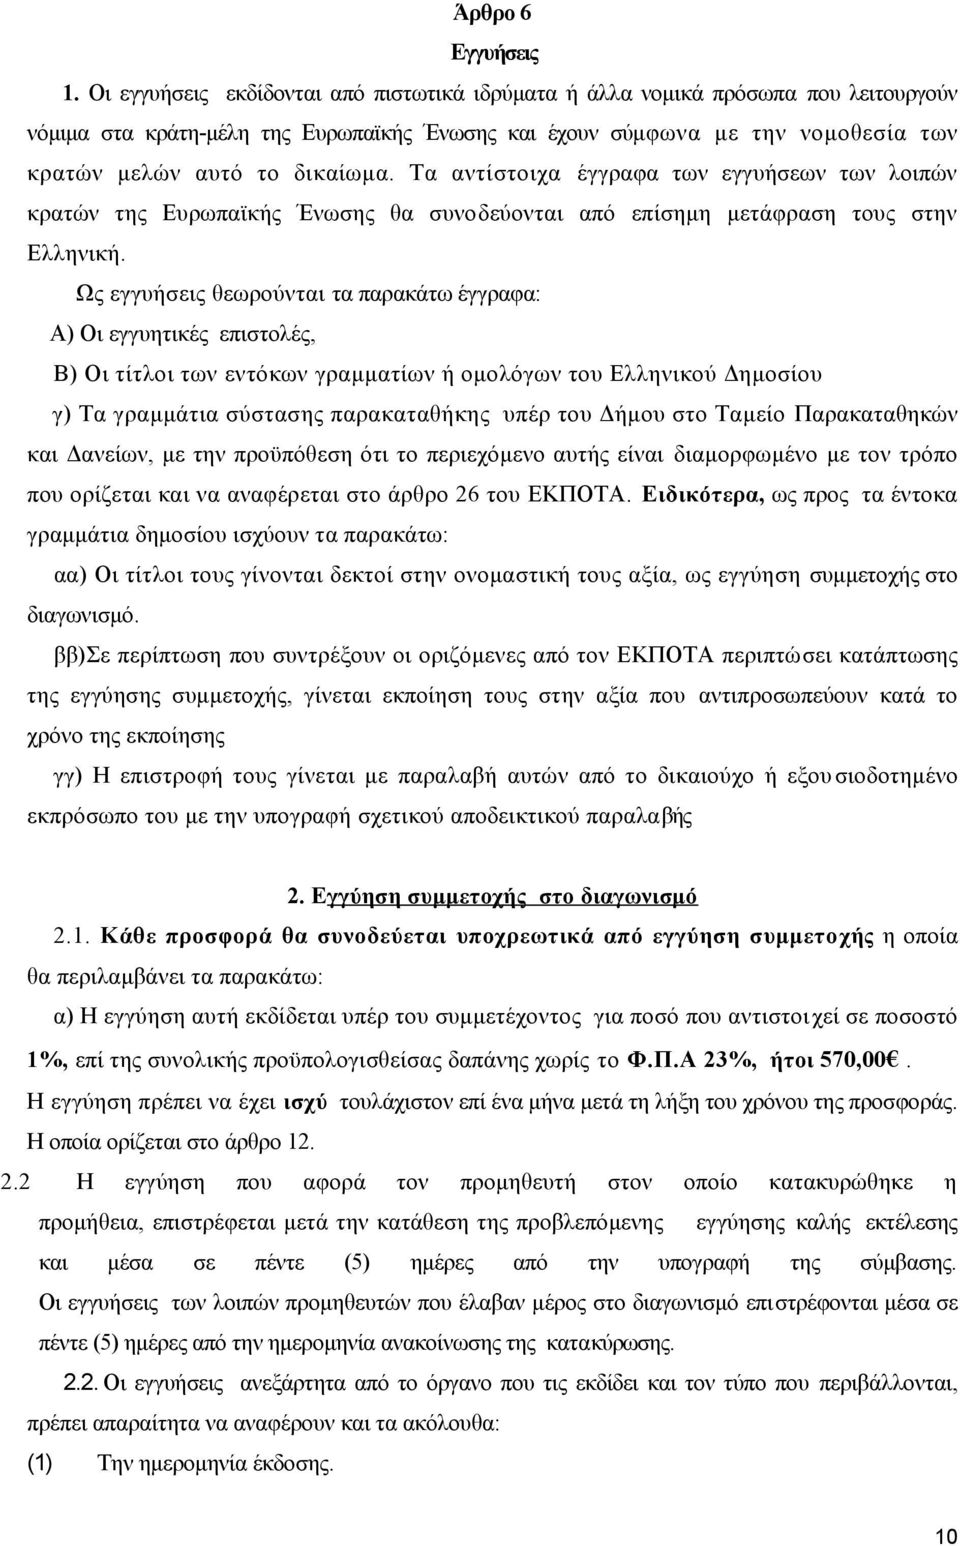 Τα αντίστοιχα έγγραφα των εγγυήσεων των λοιπών κρατών της Ευρωπαϊκής Ένωσης θα συνοδεύονται από επίσημη μετάφραση τους στην Ελληνική.